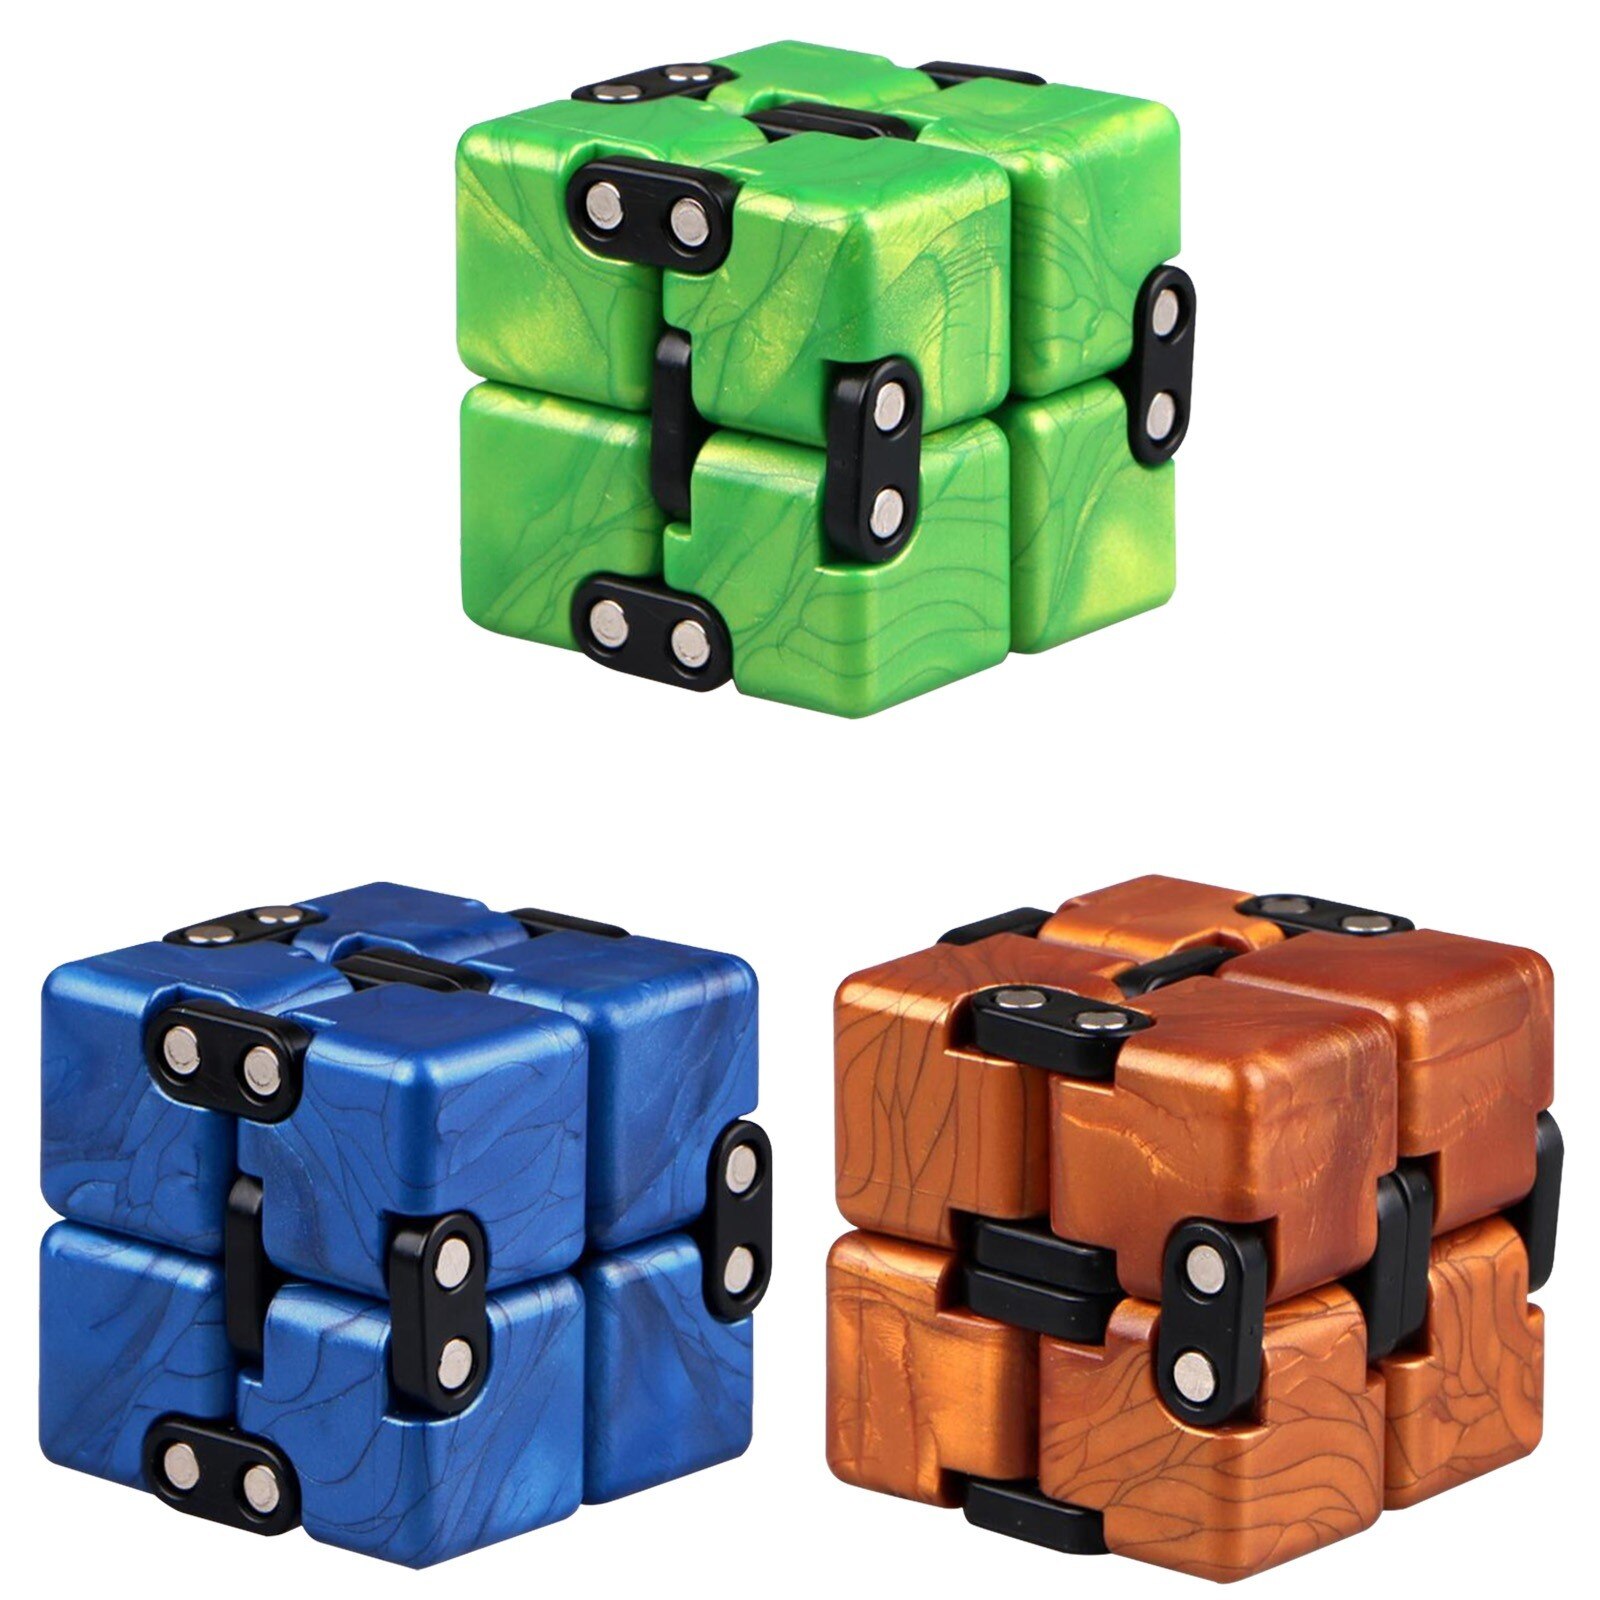 3Pcs Infinity Cube Cool Mini Gadget Beste Voor Stress En Angst Relief Figet Speelgoed Ontspannen Speelgoed Volwassenen stress